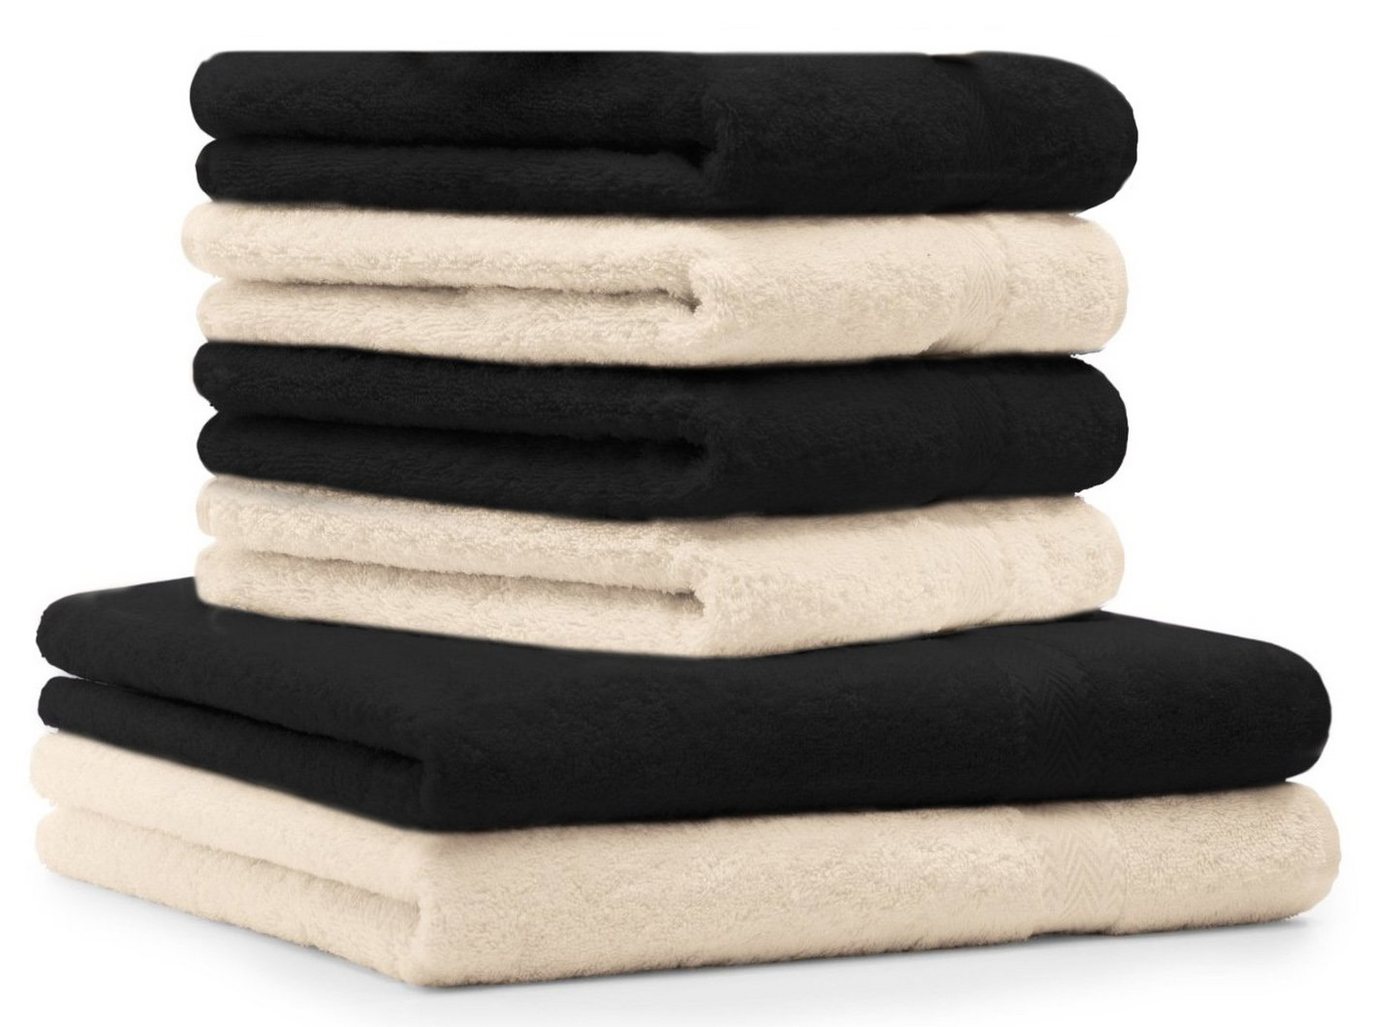 Betz Handtuch Set 6-TLG. Handtuch-Set Premium 100% Baumwolle 2 Duschtücher 4 Handtücher Farbe schwarz und beige, 100% Baumwolle von Betz